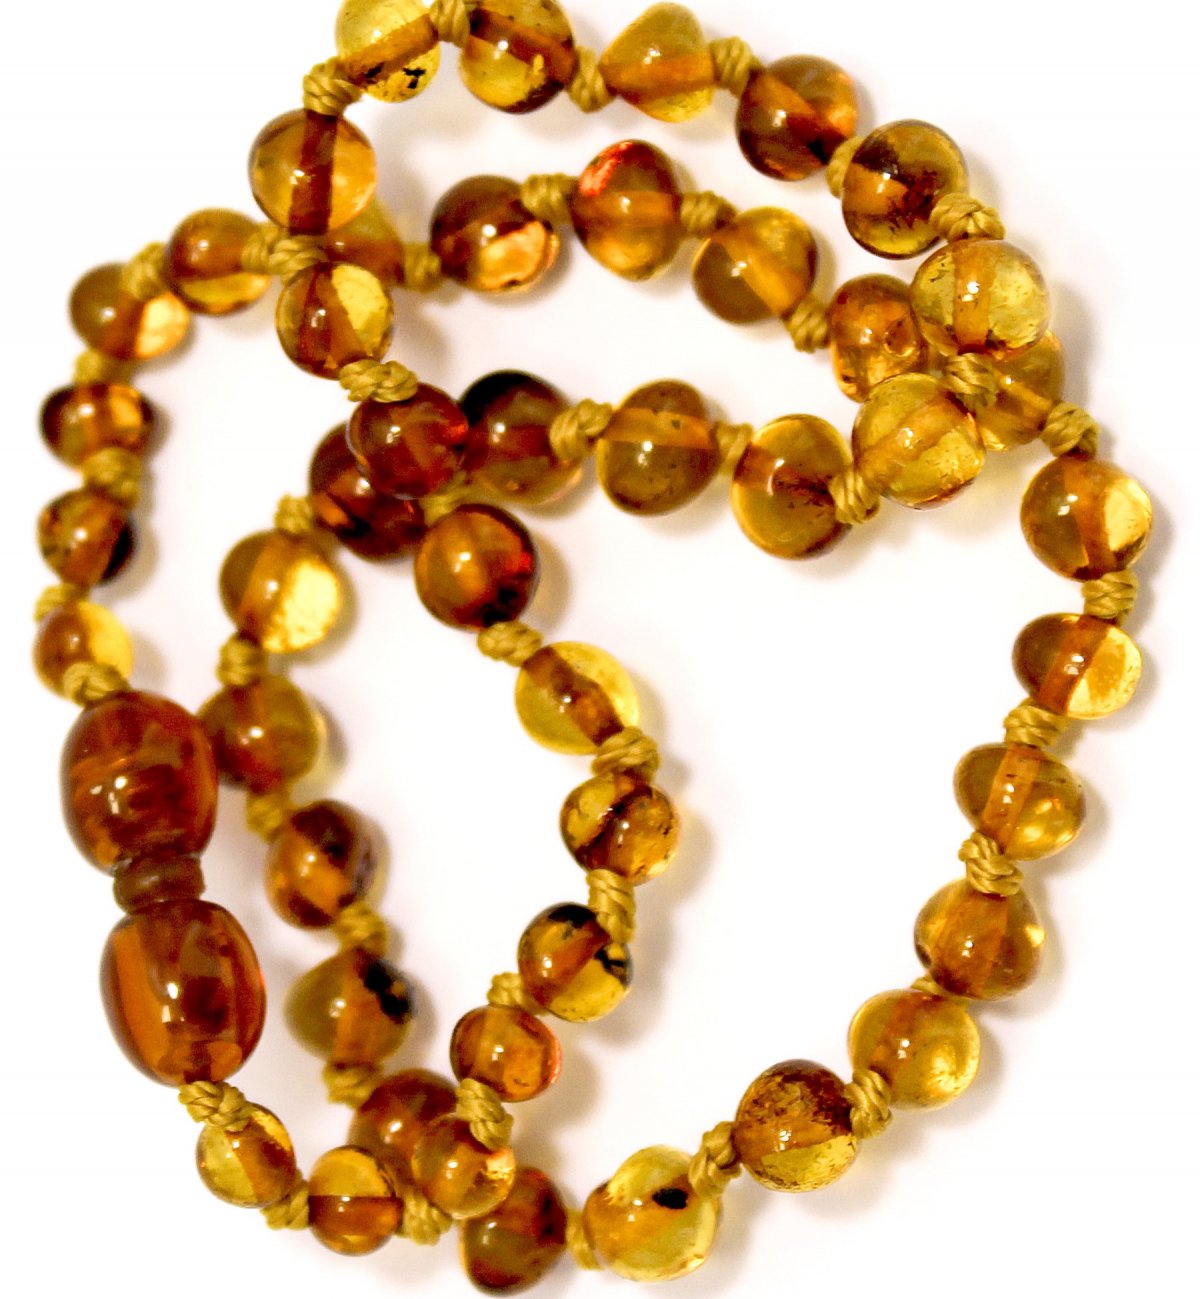 Baby sicher Bernstein Halskette mit runden Honig Perlen Kadolis